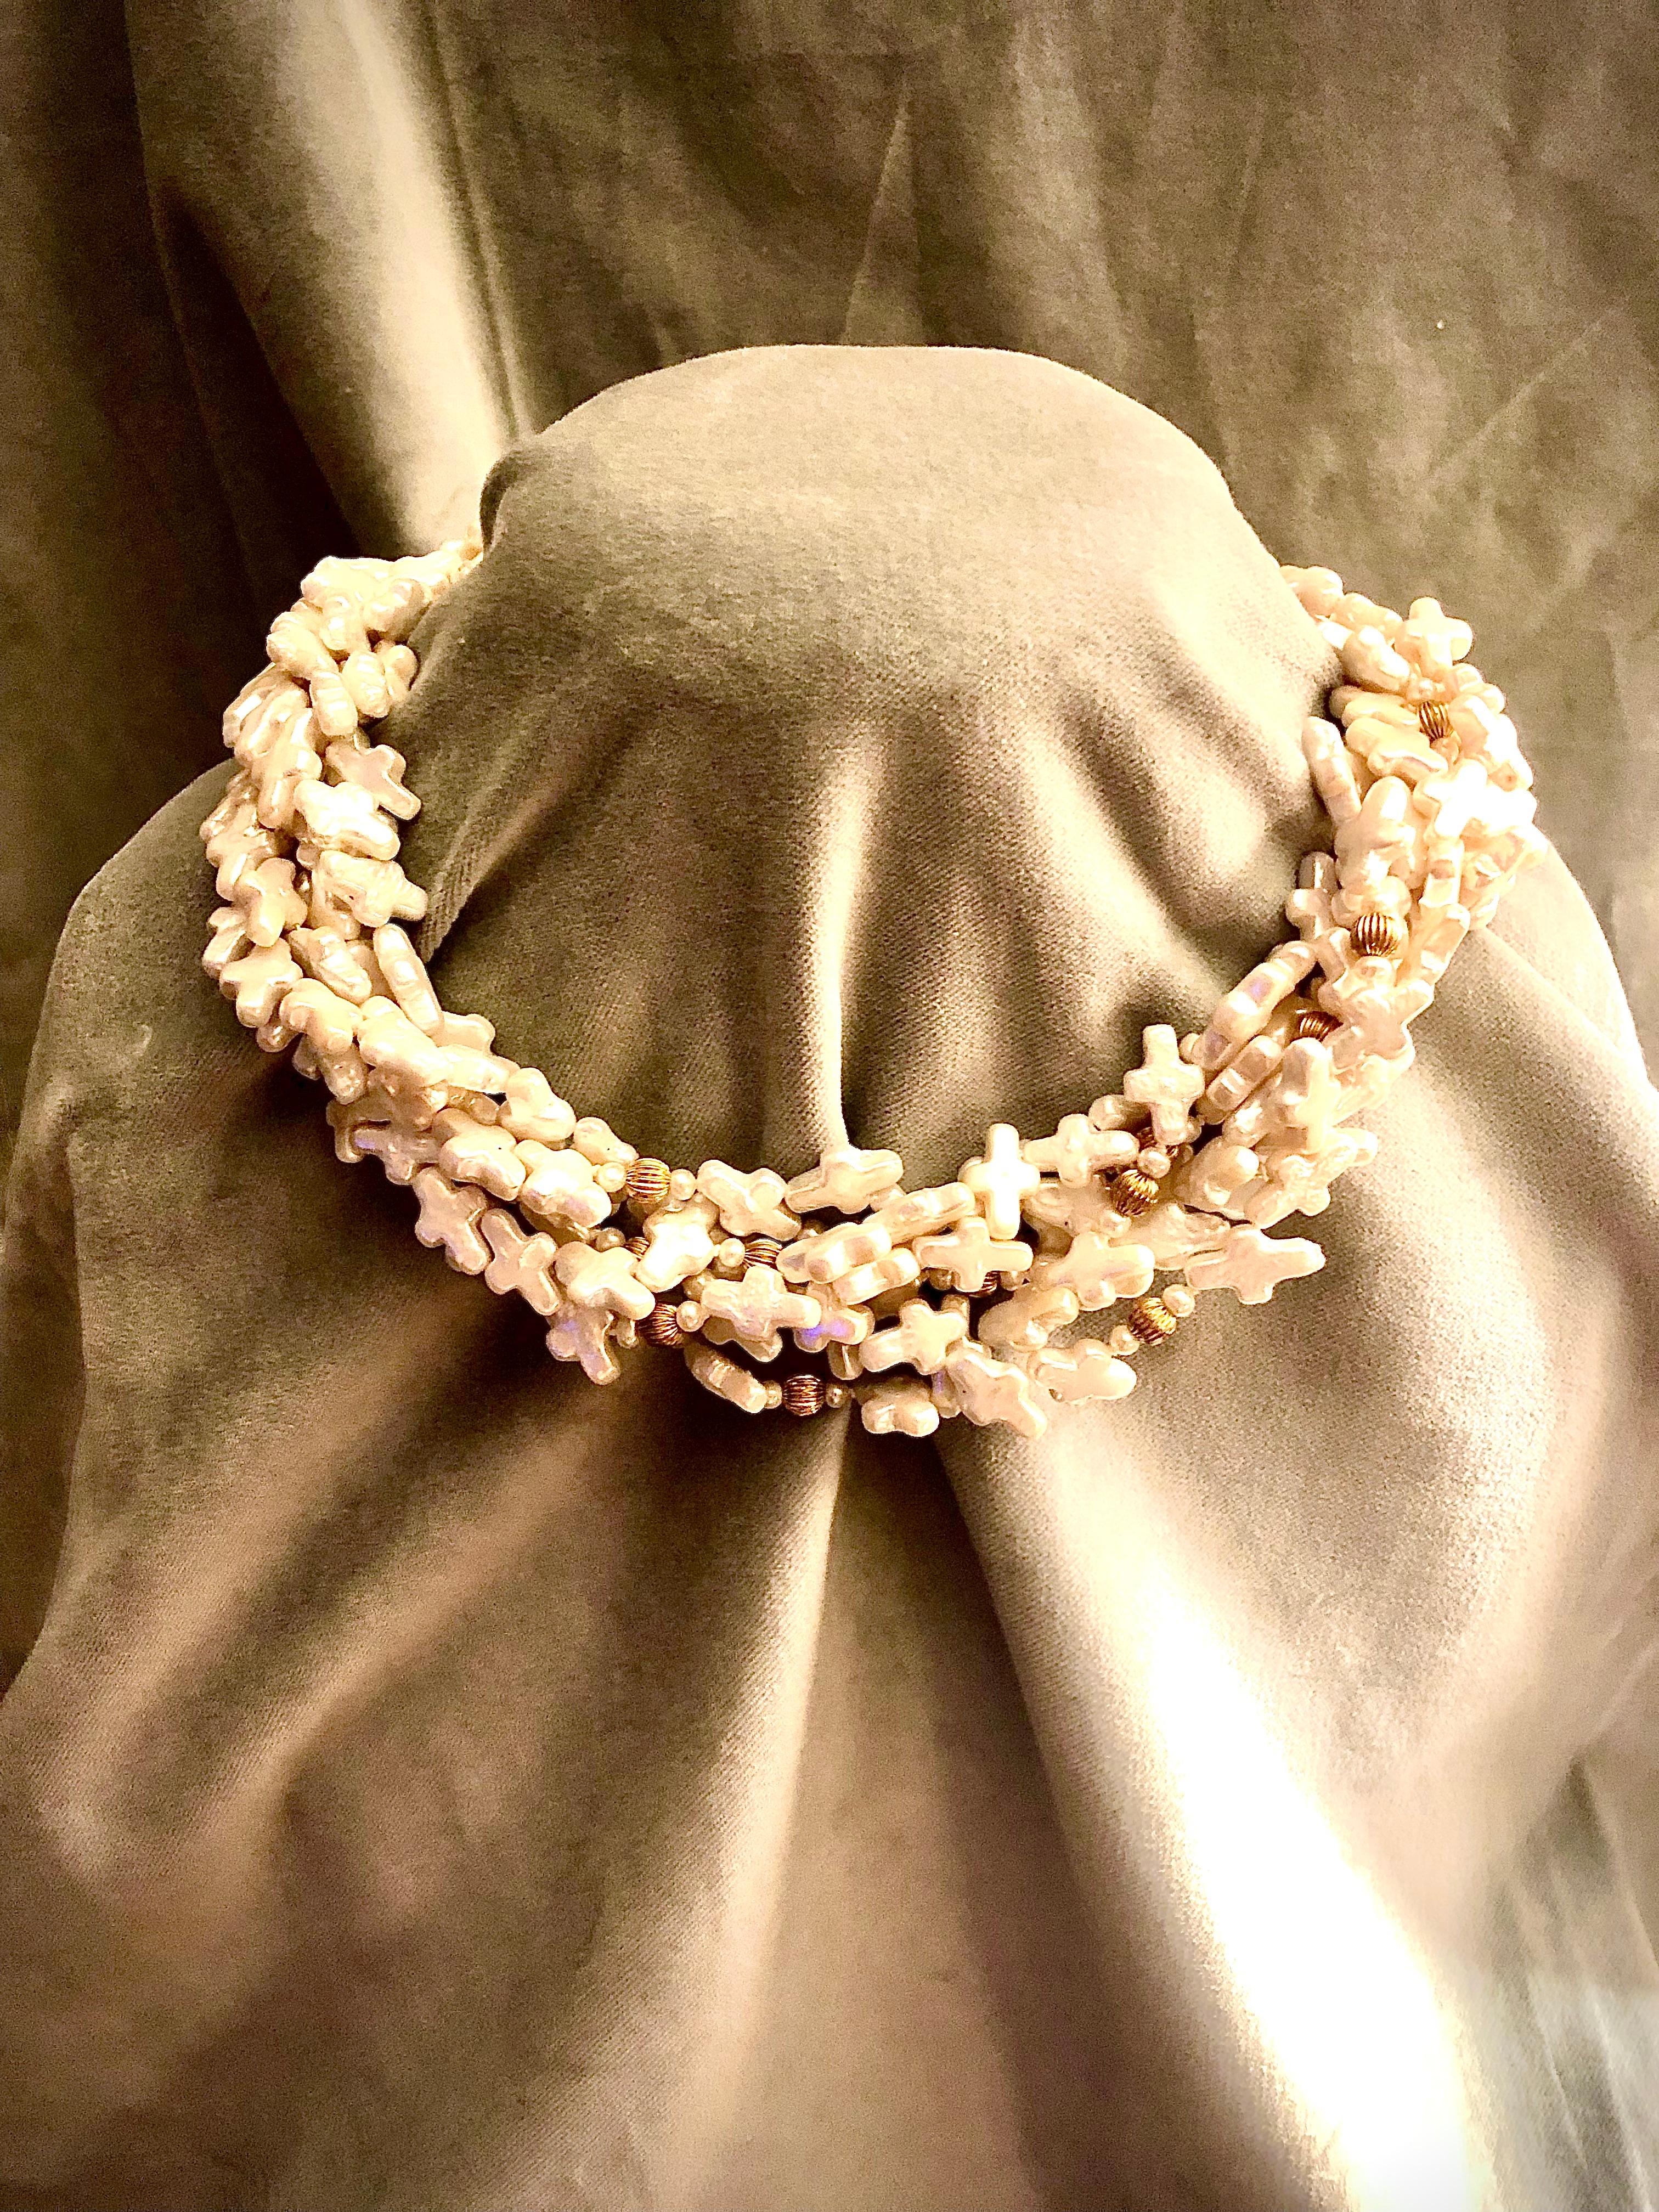 Bedeutendes und sehr schönes neunstrangiges Collier aus Süßwasserperlen. Geformte Perlen formen einen schönen, ineinander greifenden Effekt, wenn sie sanft gedreht werden, und umrahmen den Hals und das Gesicht sehr schmeichelhaft.

Die Perlen sind